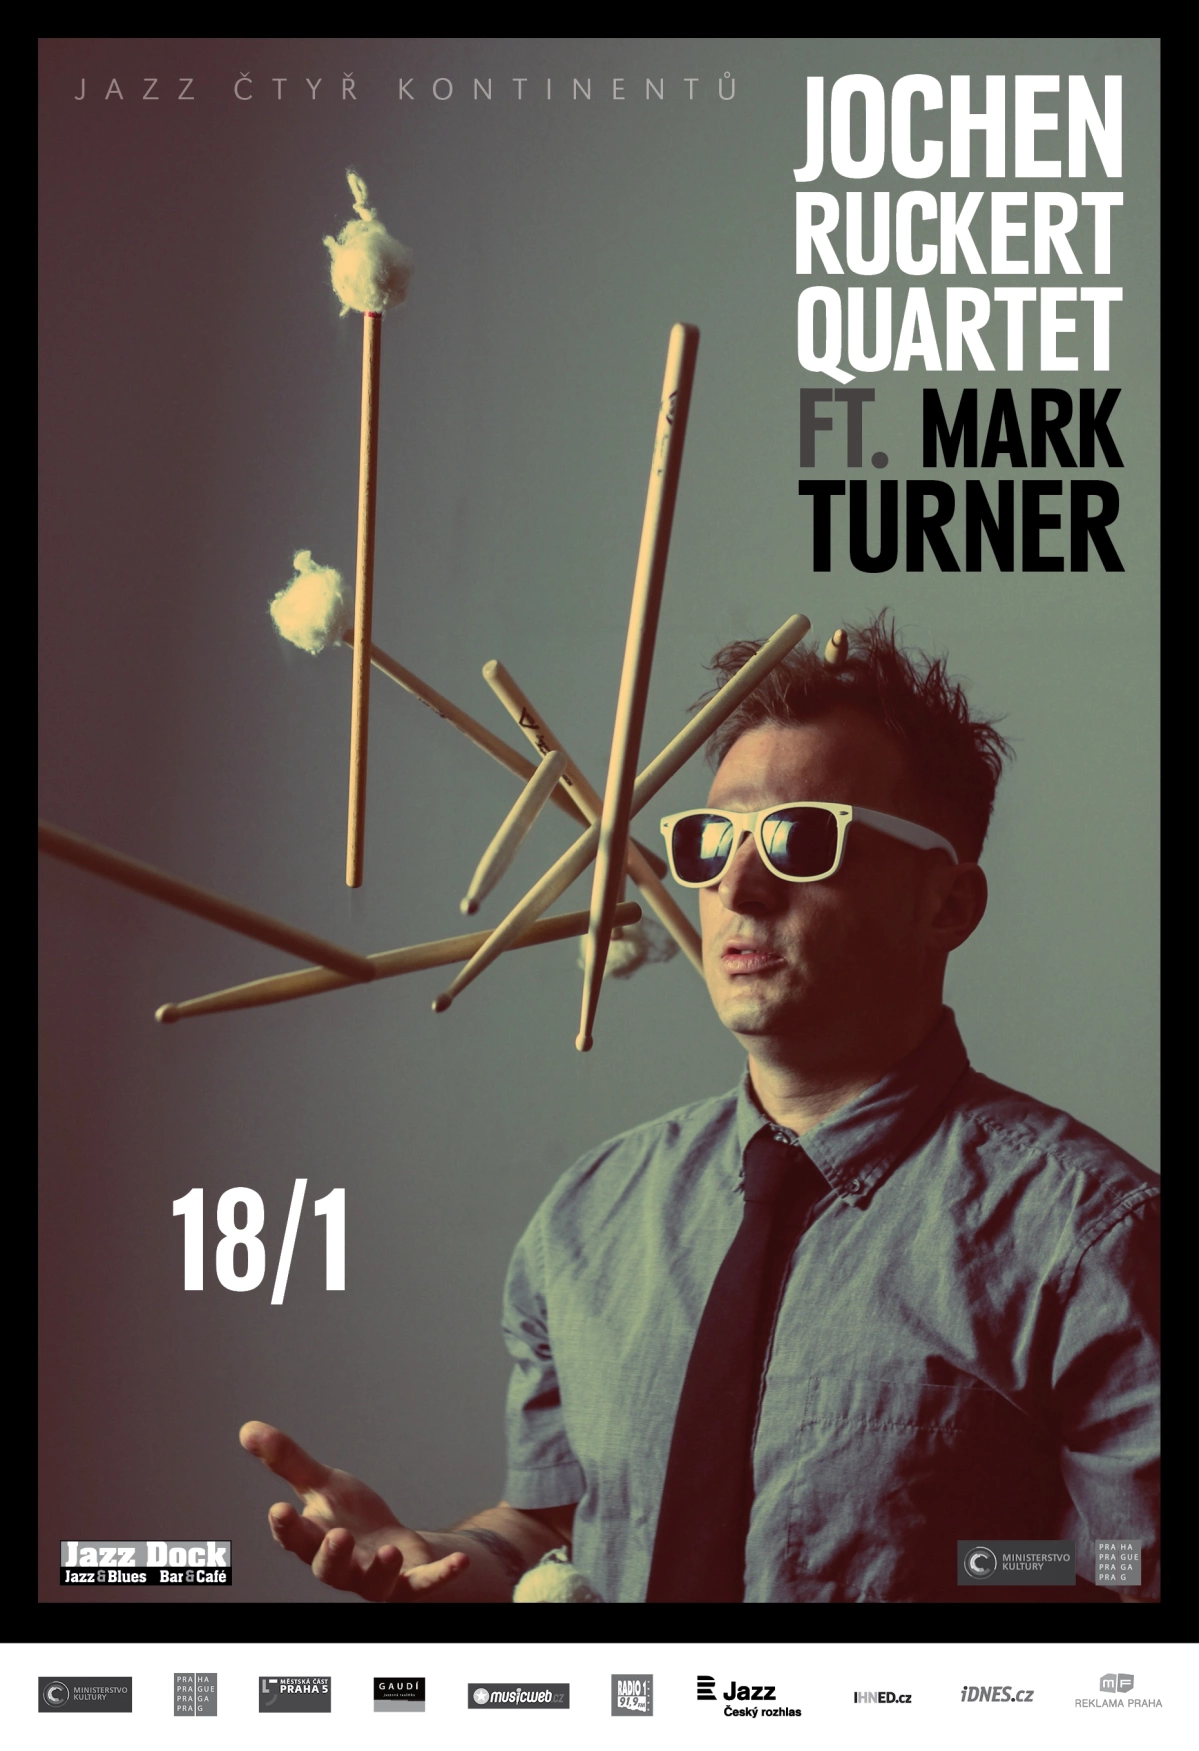 JAZZ OF 4 CONTINENTS: Jochen Ruckert Quartet ft. Mark Turner (USA/D)